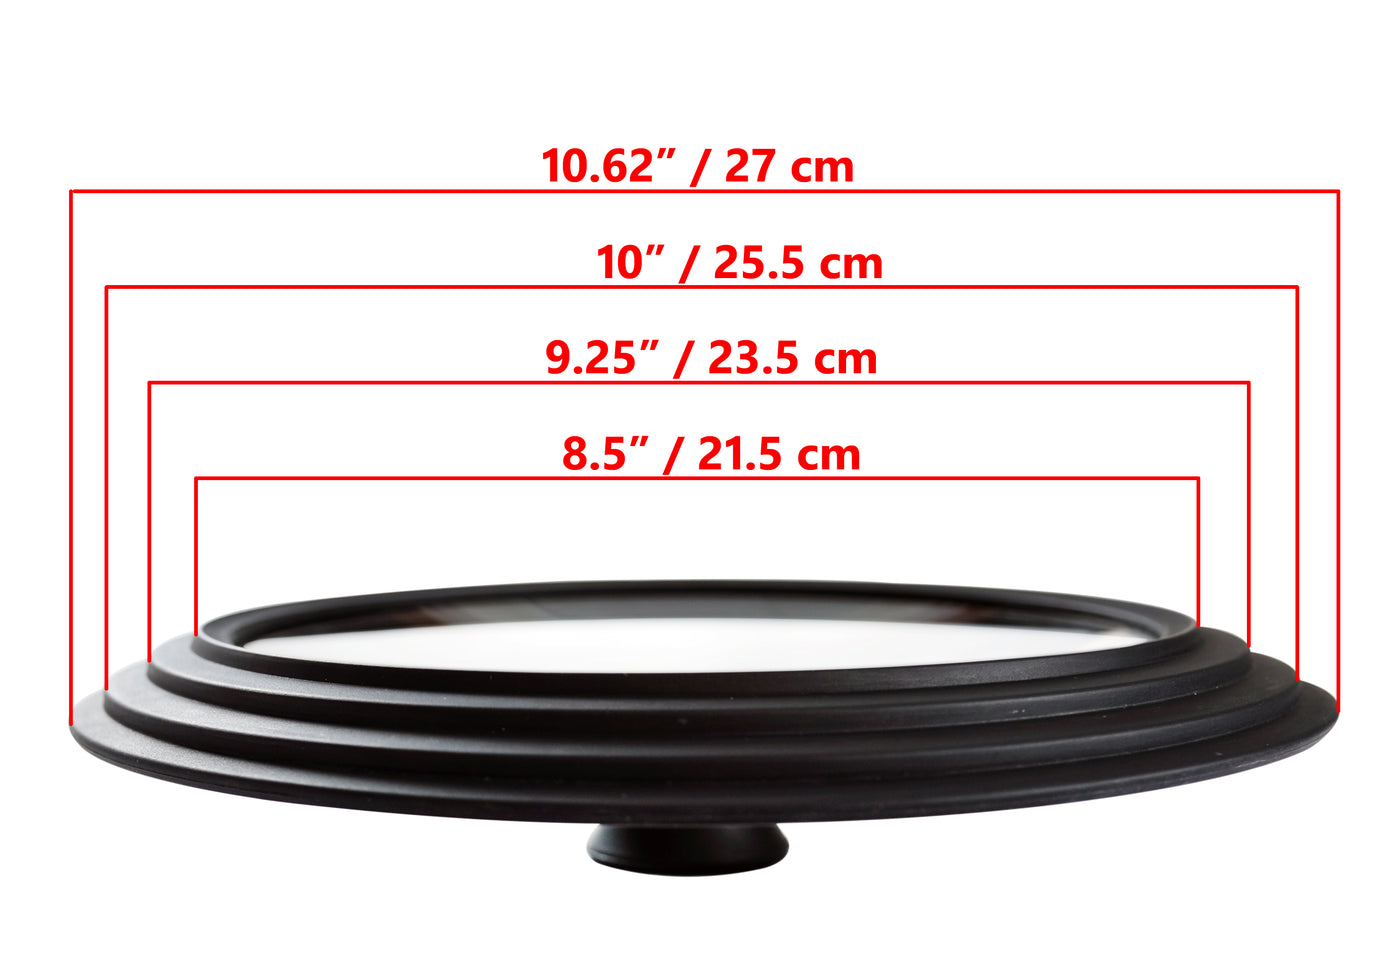 2 件装 - 通用玻璃盖 - 多种尺寸，适用于锅碗瓢盆，黑色